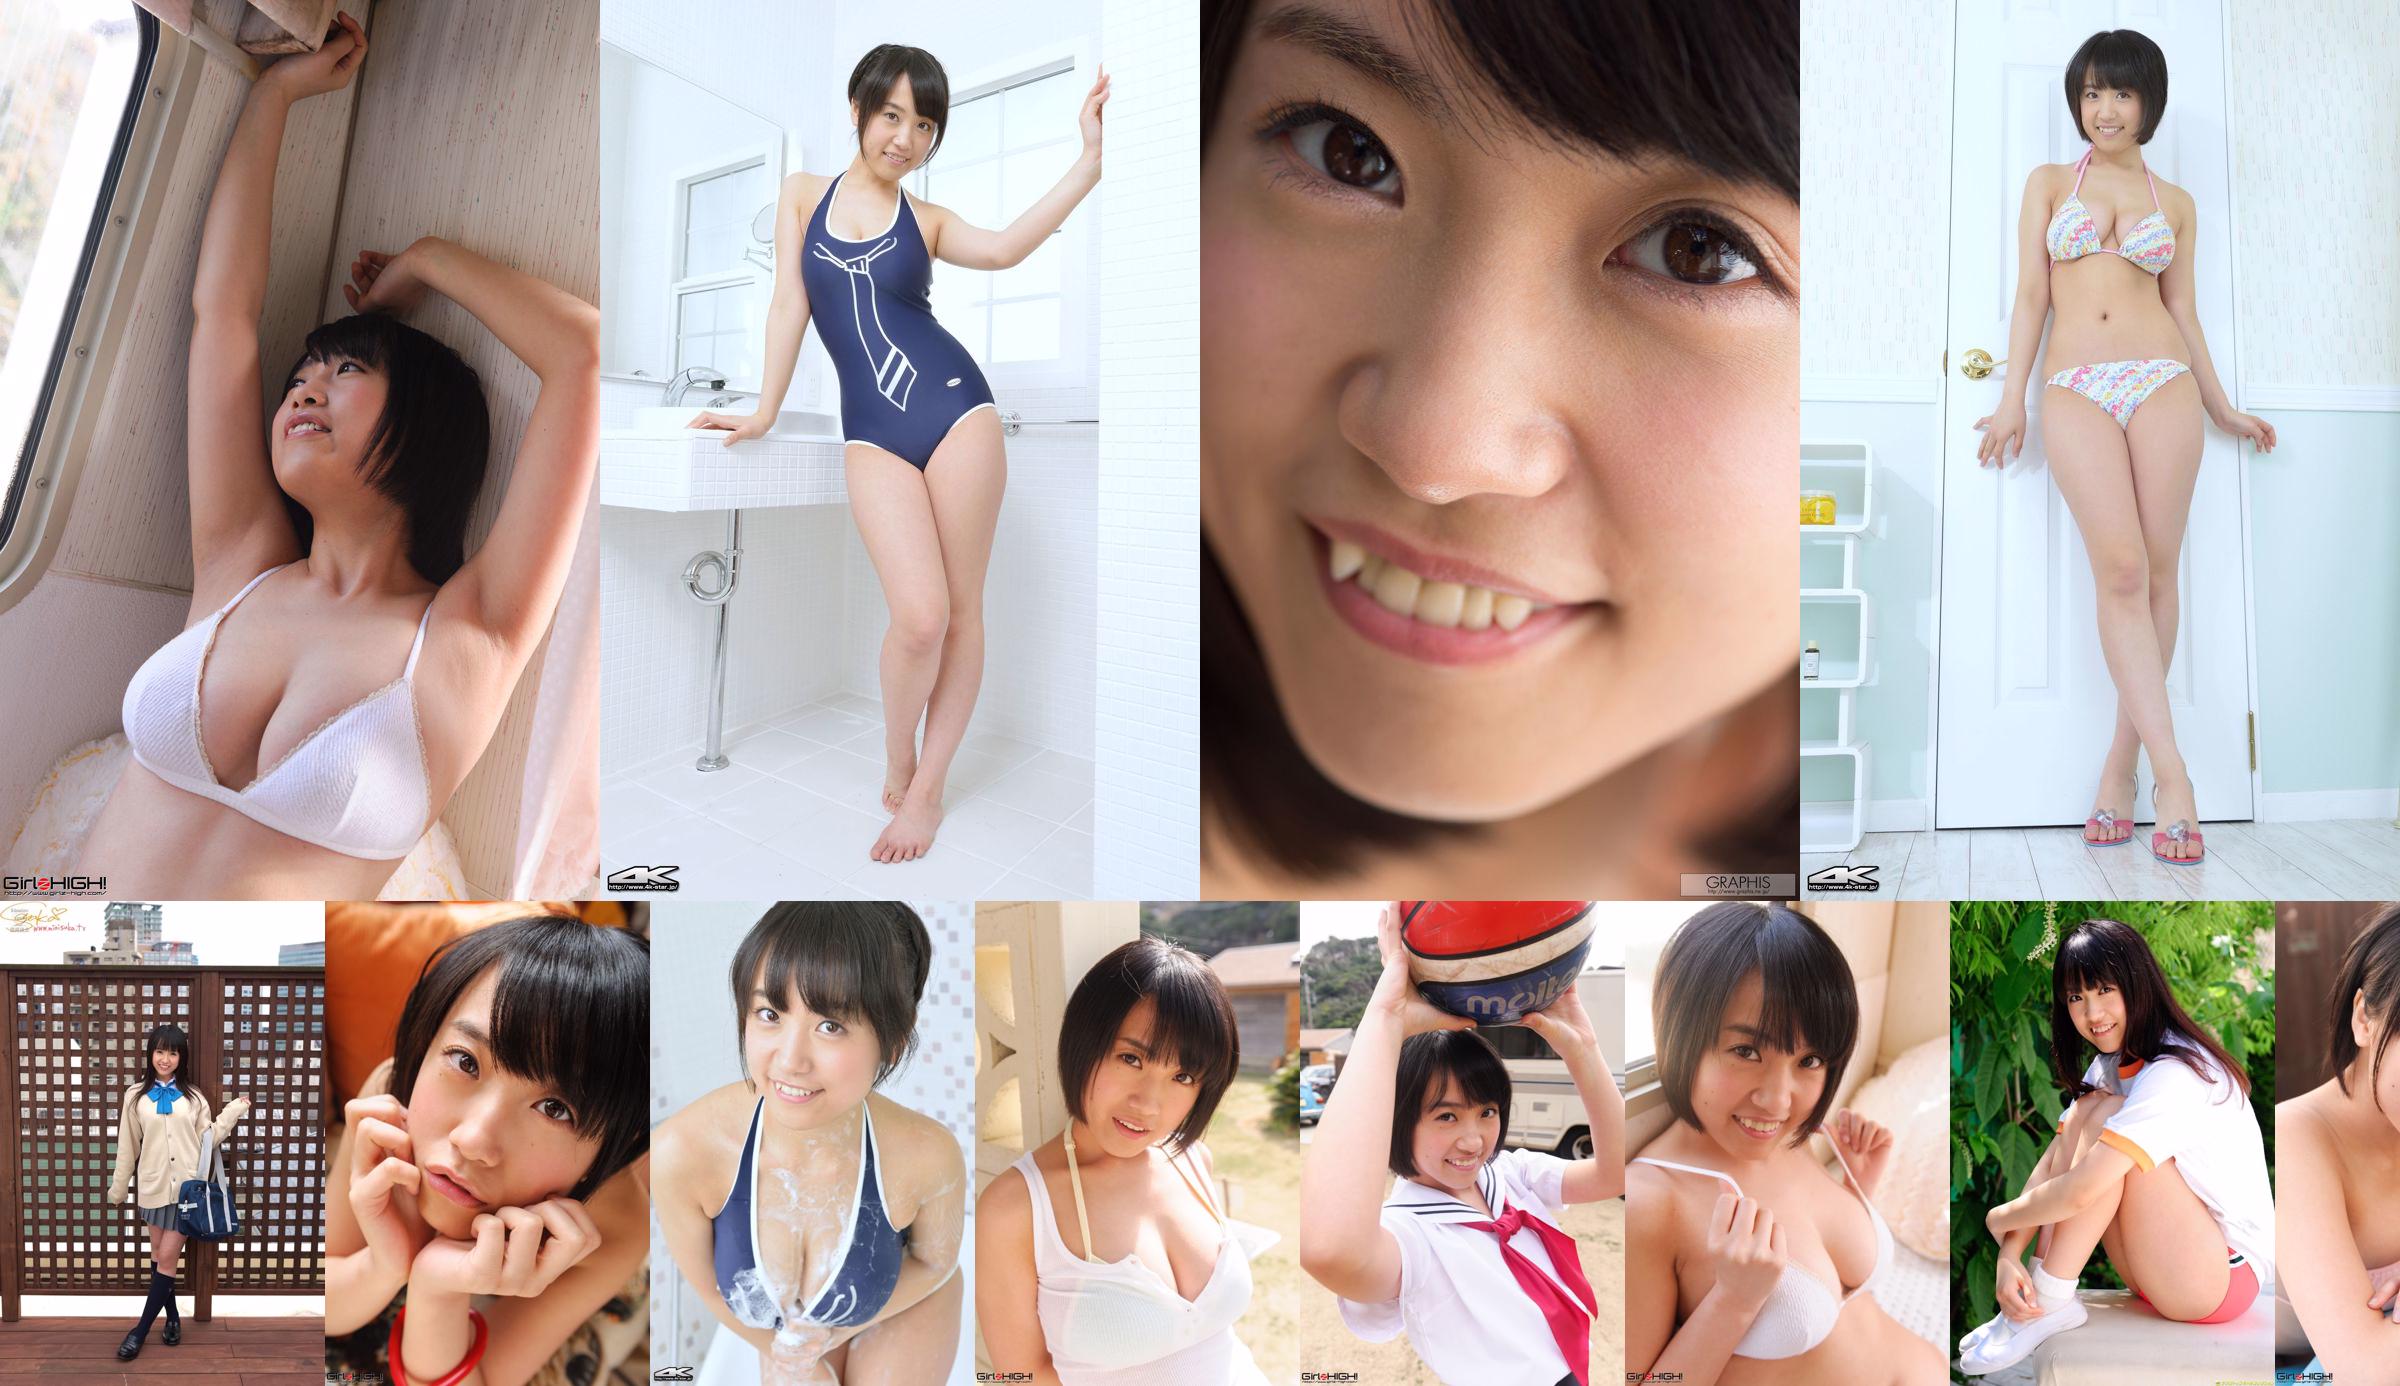 [Girlz-High] Mami Nagase Nagase Asami-Big breasted girl # g025 Gravure Gallery 01 No.3dd7c6 Page 1